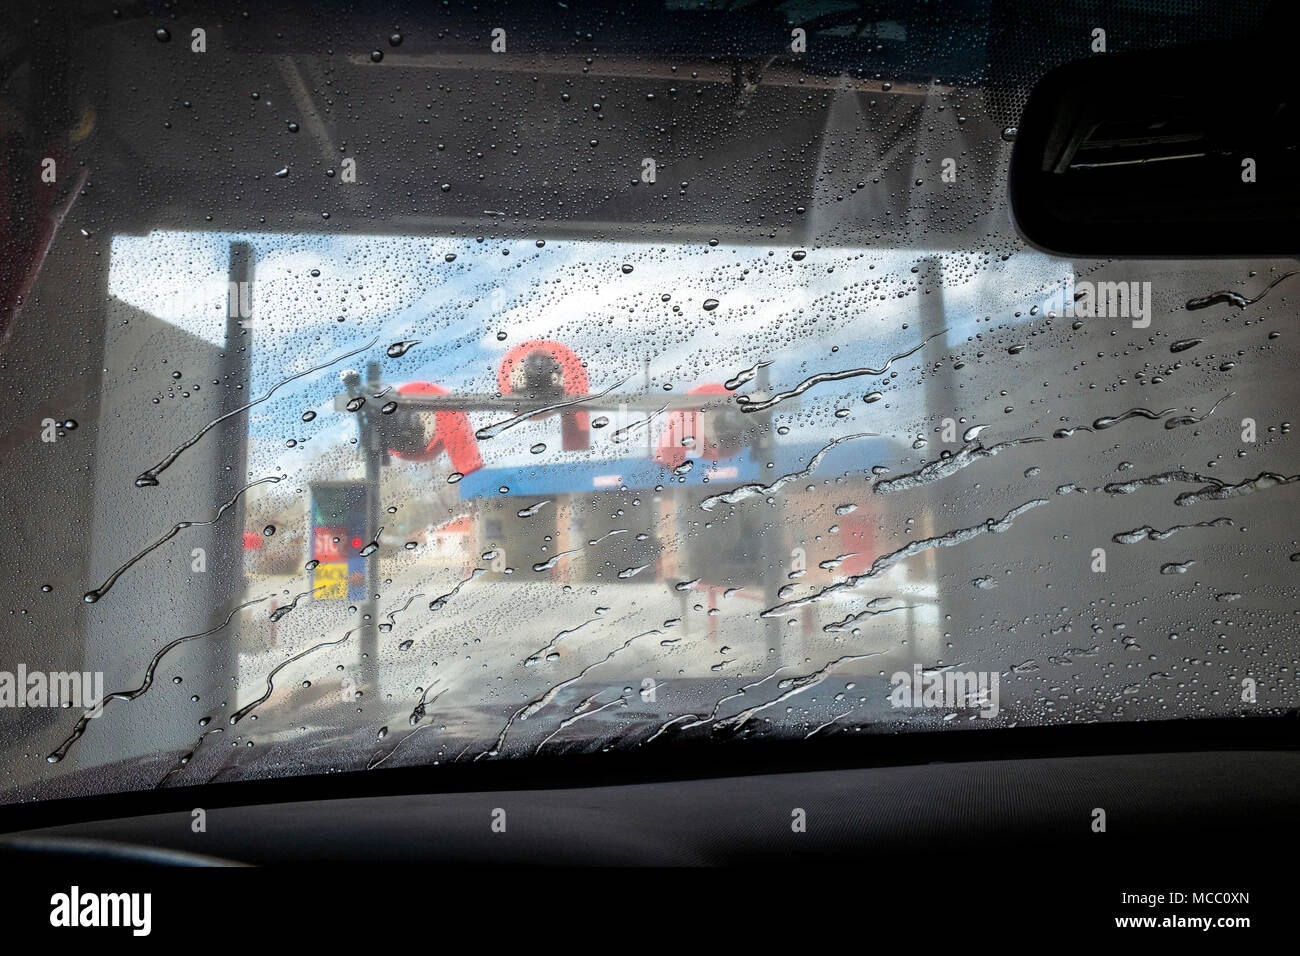 Vue à travers le pare-brise auto, lavage de voiture Banque D'Images